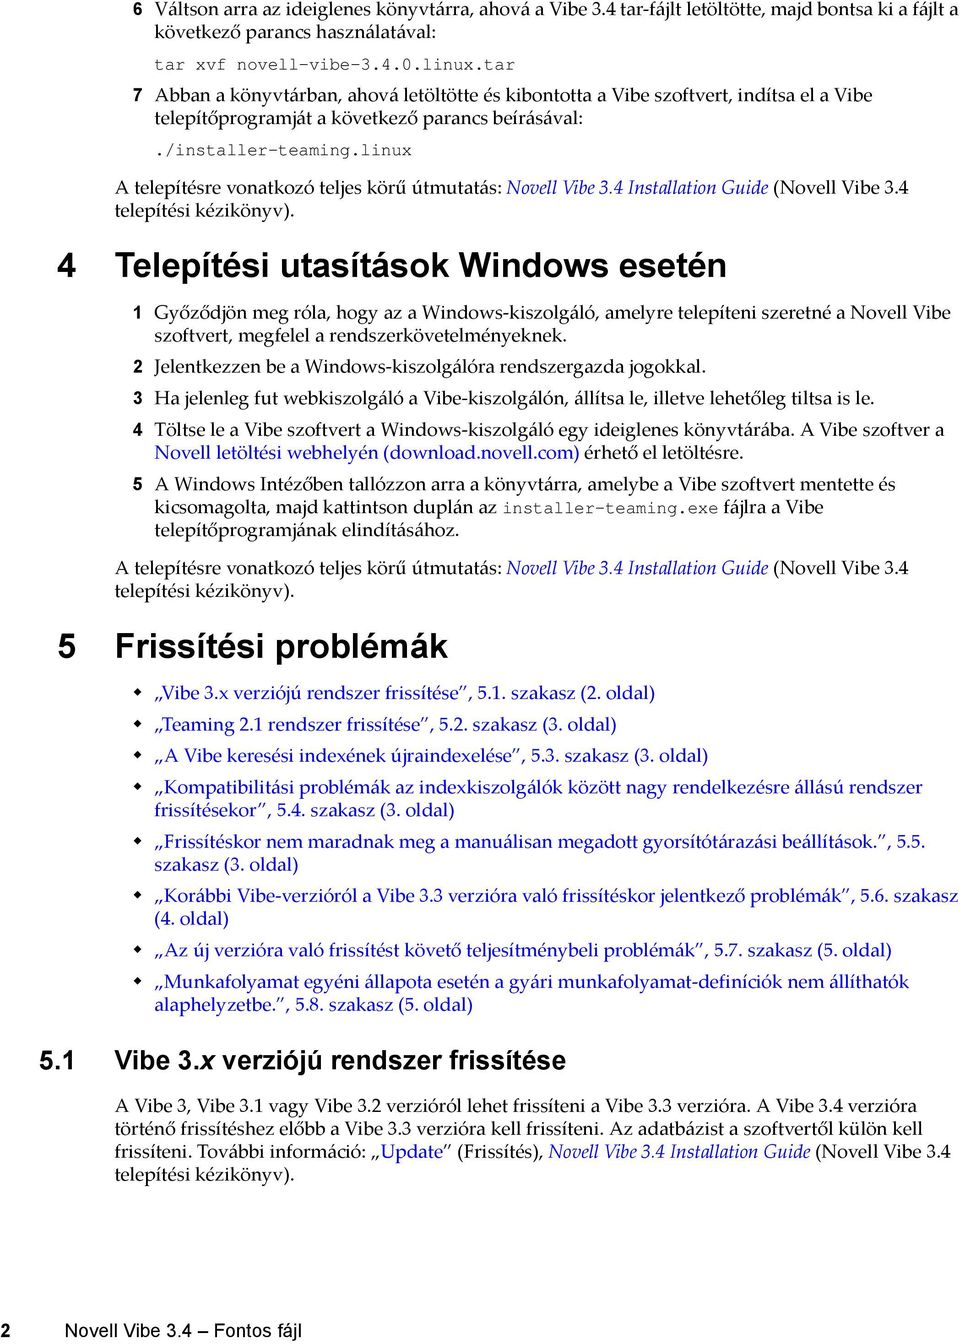 linux A telepítésre vonatkozó teljes körű útmutatás: Novell Vibe 3.4 Installation Guide (Novell Vibe 3.4 telepítési kézikönyv).